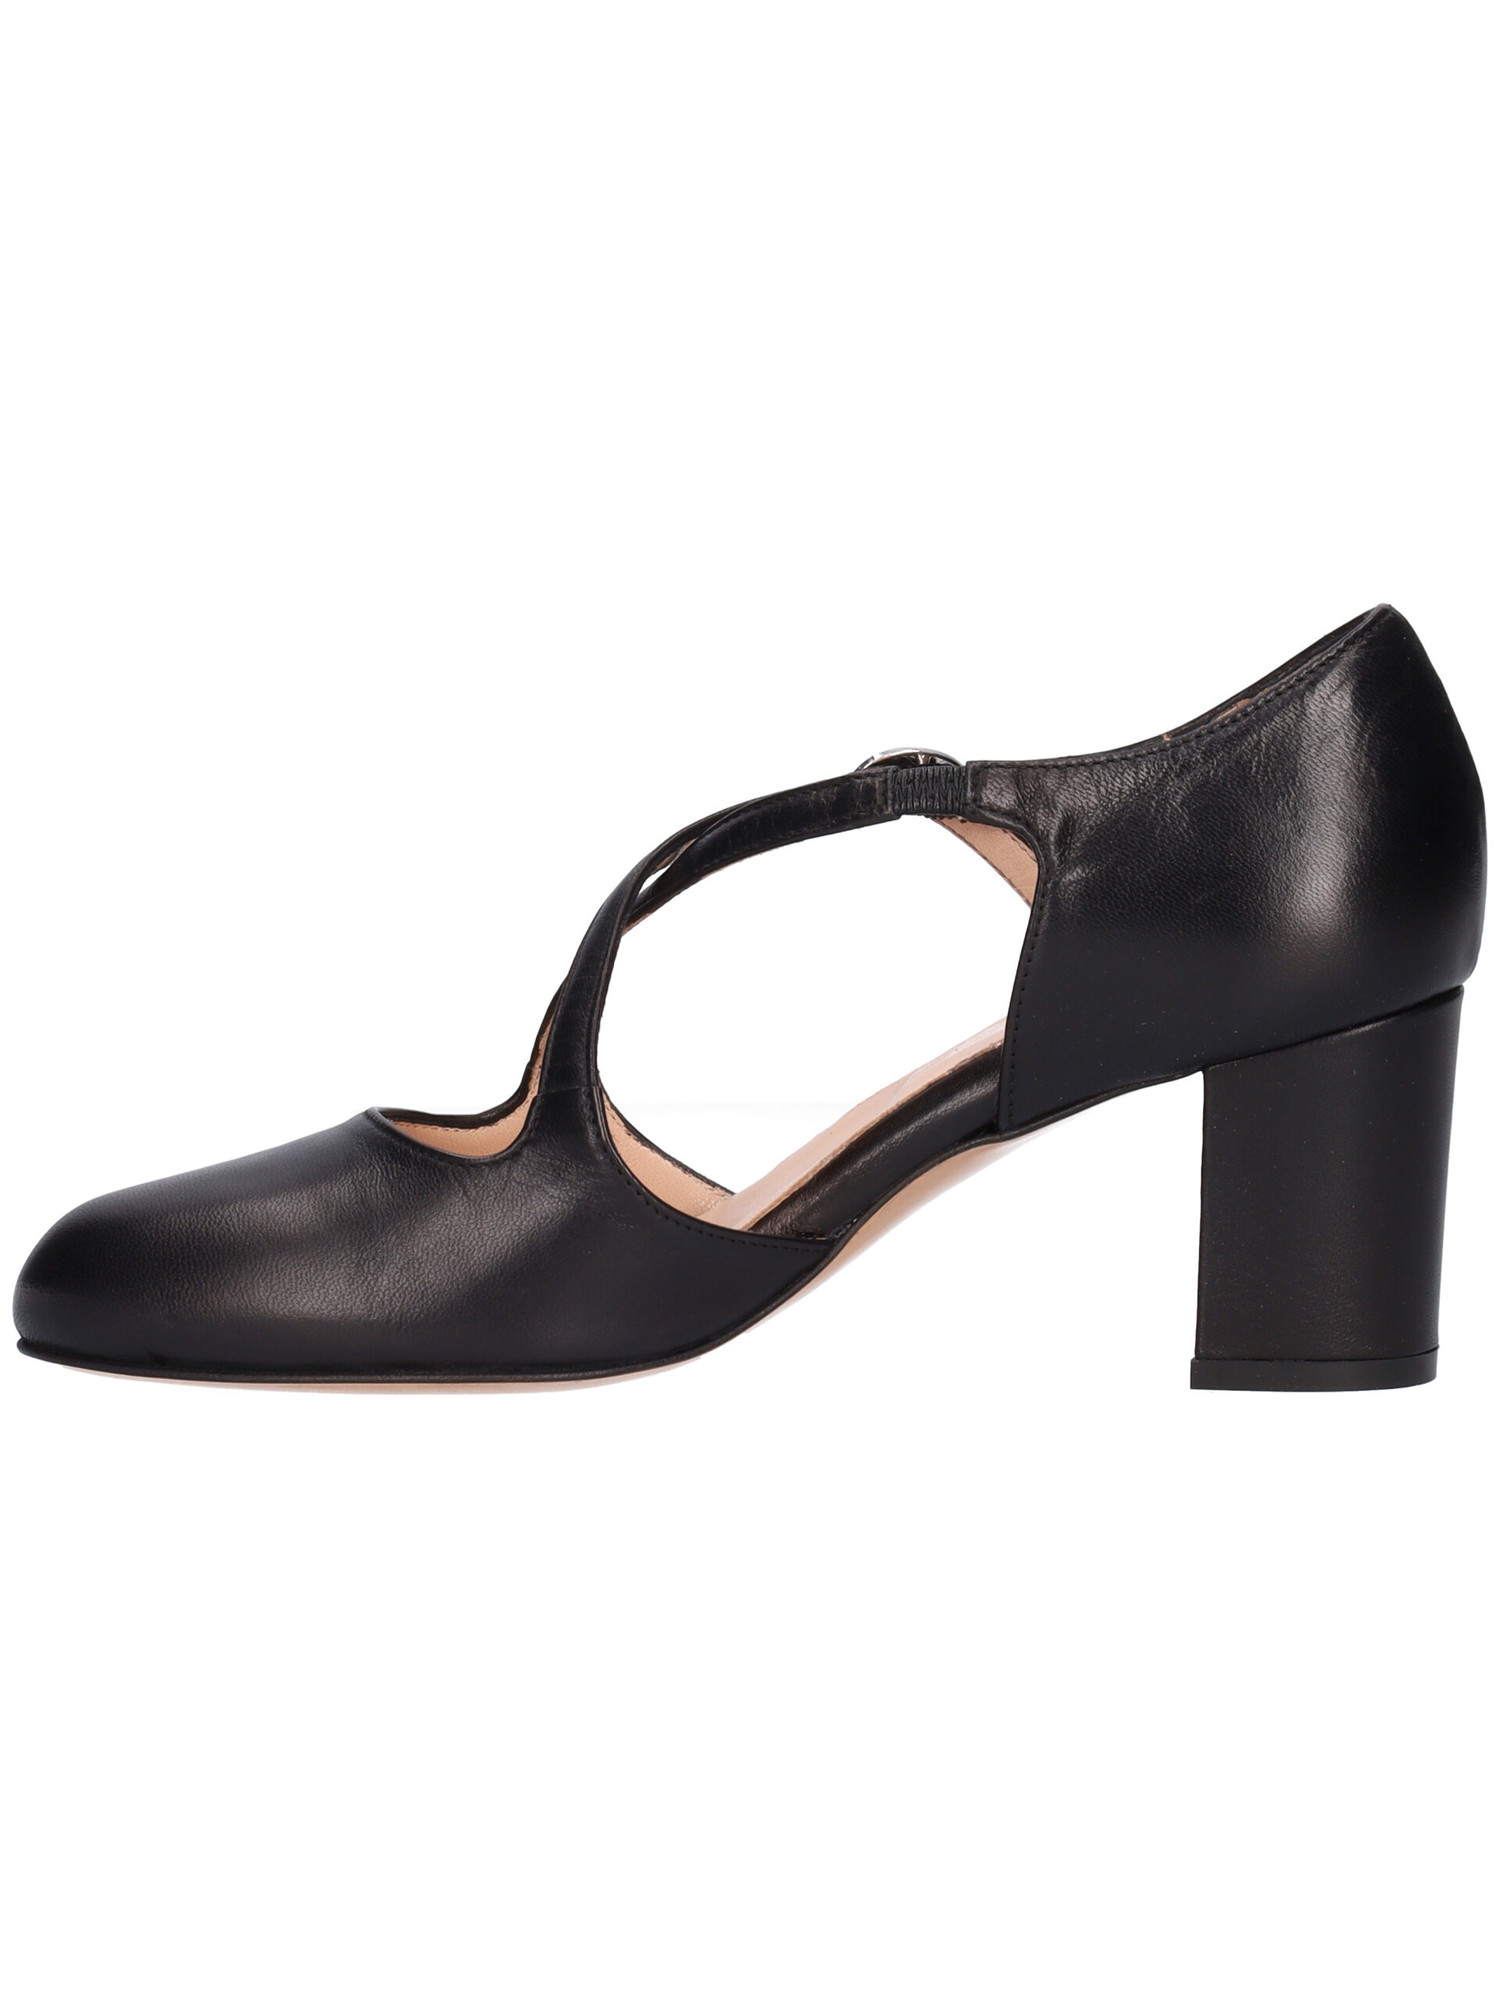 scarpa-con-tacco-largo-confort-da-donna-nera-b9c415